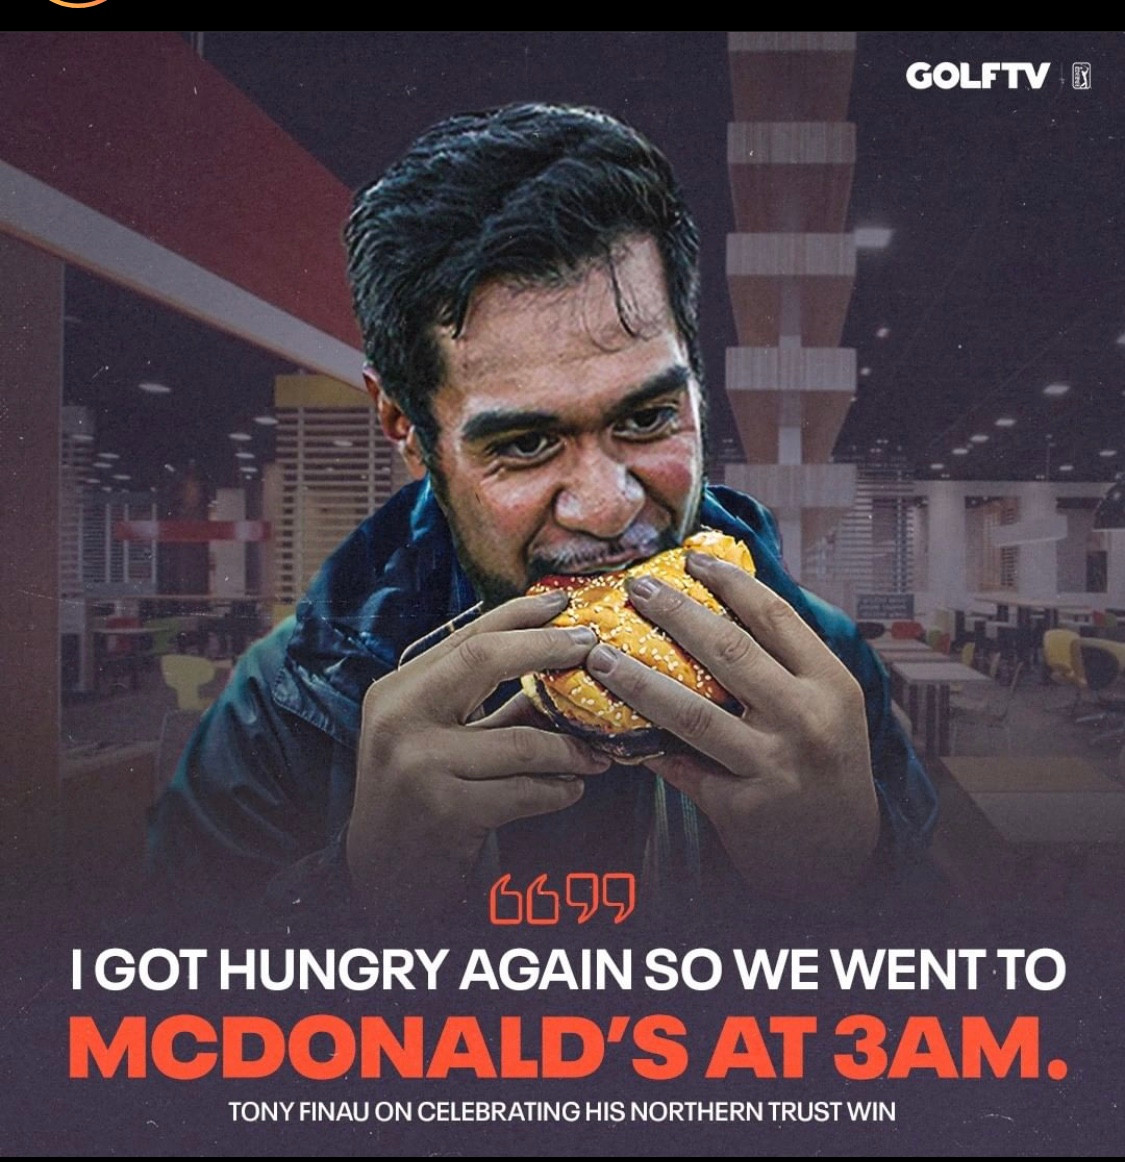 Lĩnh 1,7 triệu đô tiền thưởng, Tony Finau đi ăn McDonald lúc 3 giờ sáng - Ảnh 1.